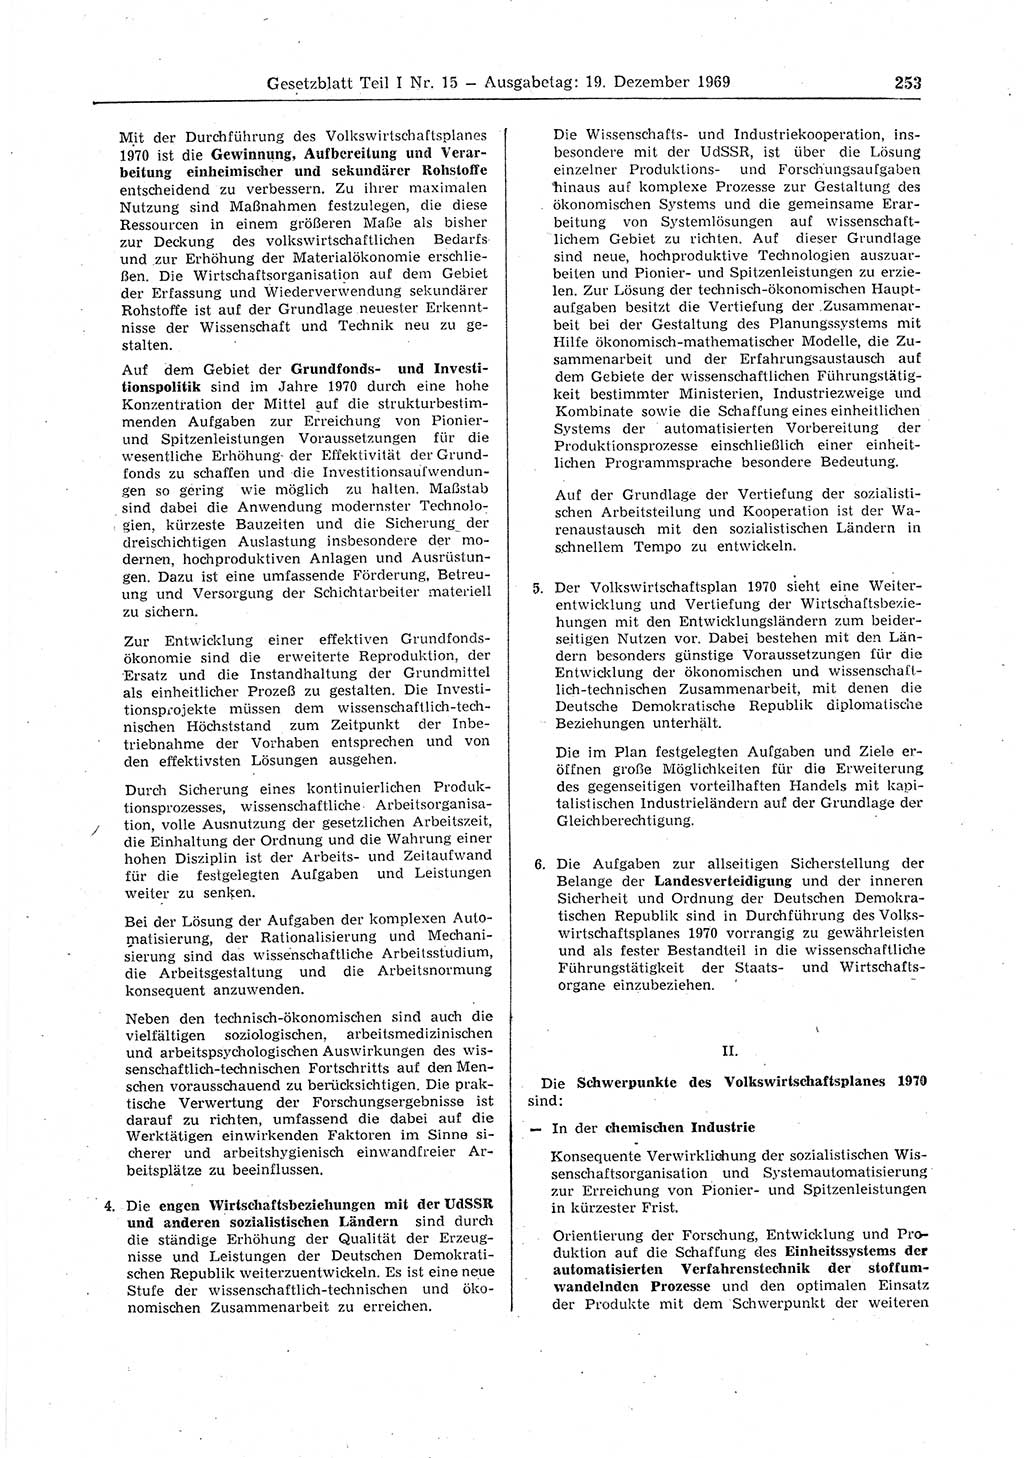 Gesetzblatt (GBl.) der Deutschen Demokratischen Republik (DDR) Teil Ⅰ 1969, Seite 253 (GBl. DDR Ⅰ 1969, S. 253)